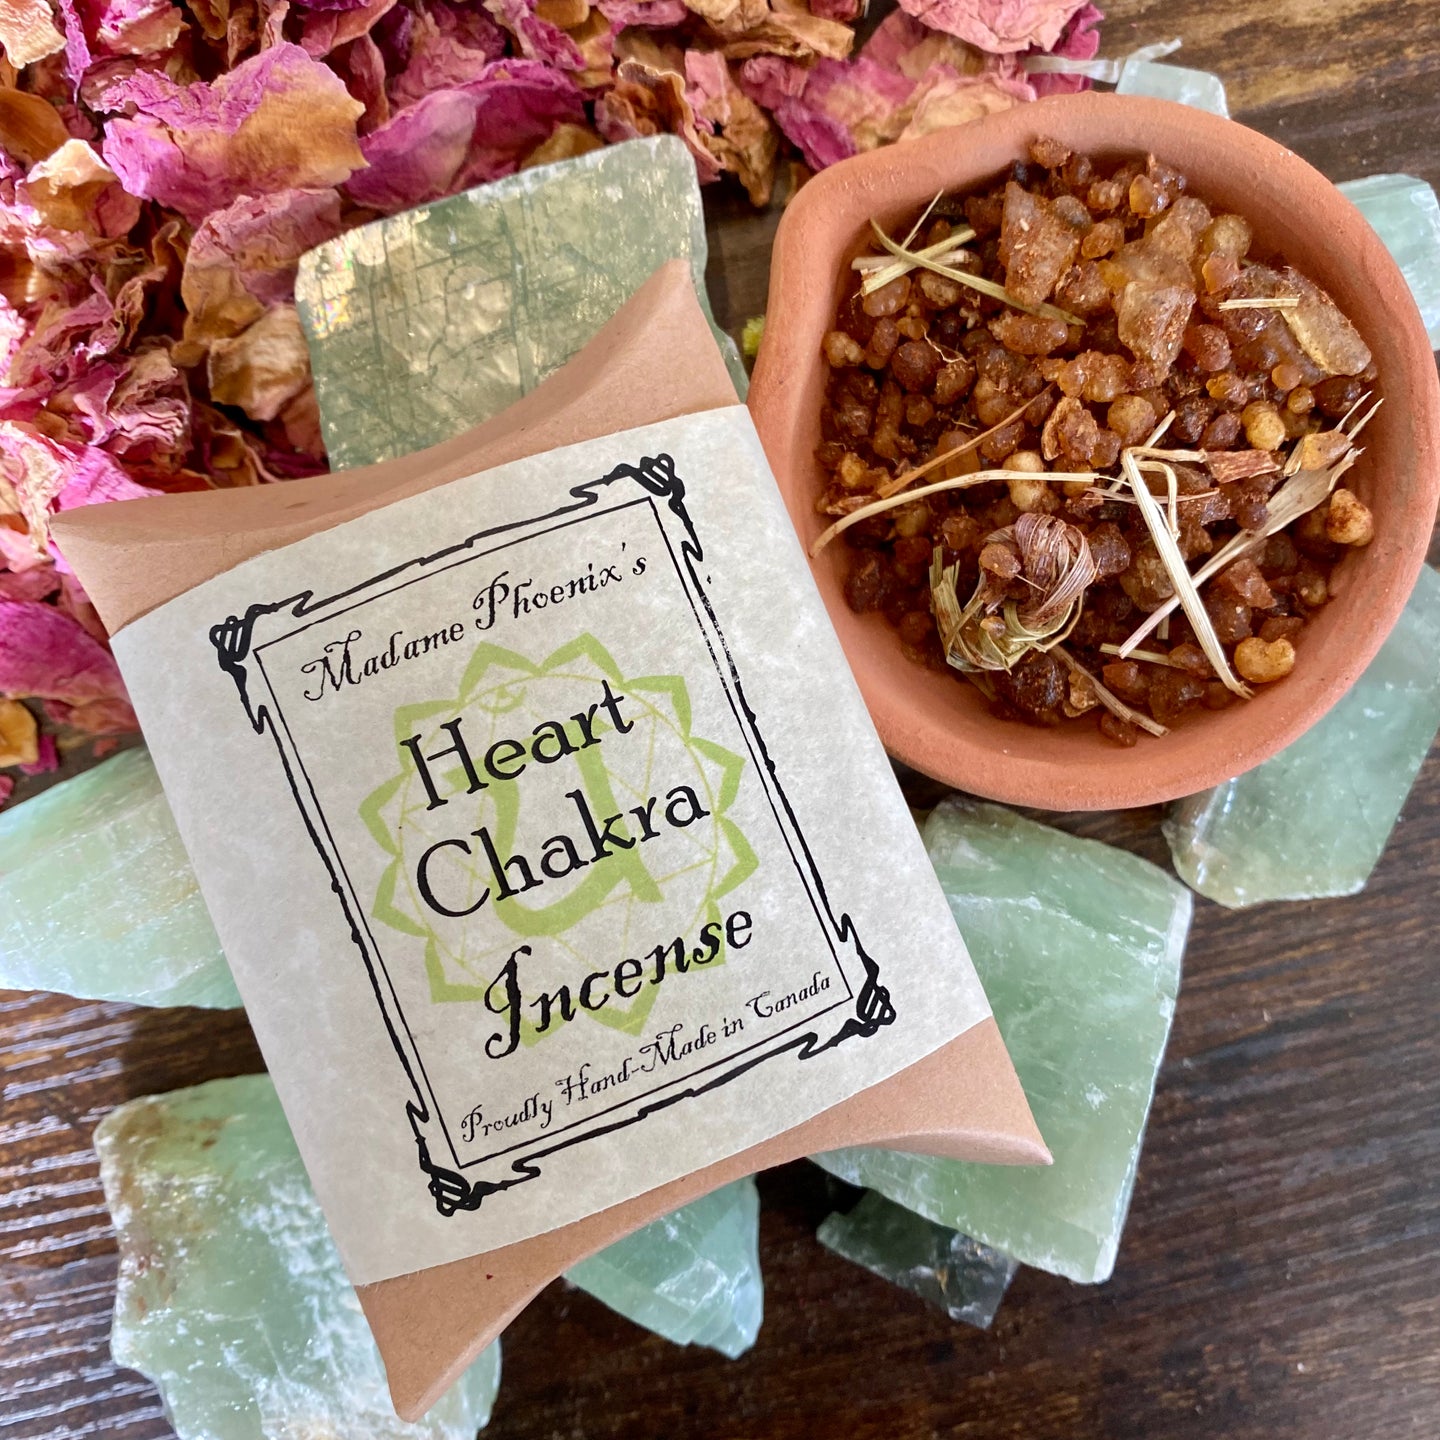 Heart Chakra Healing Incense